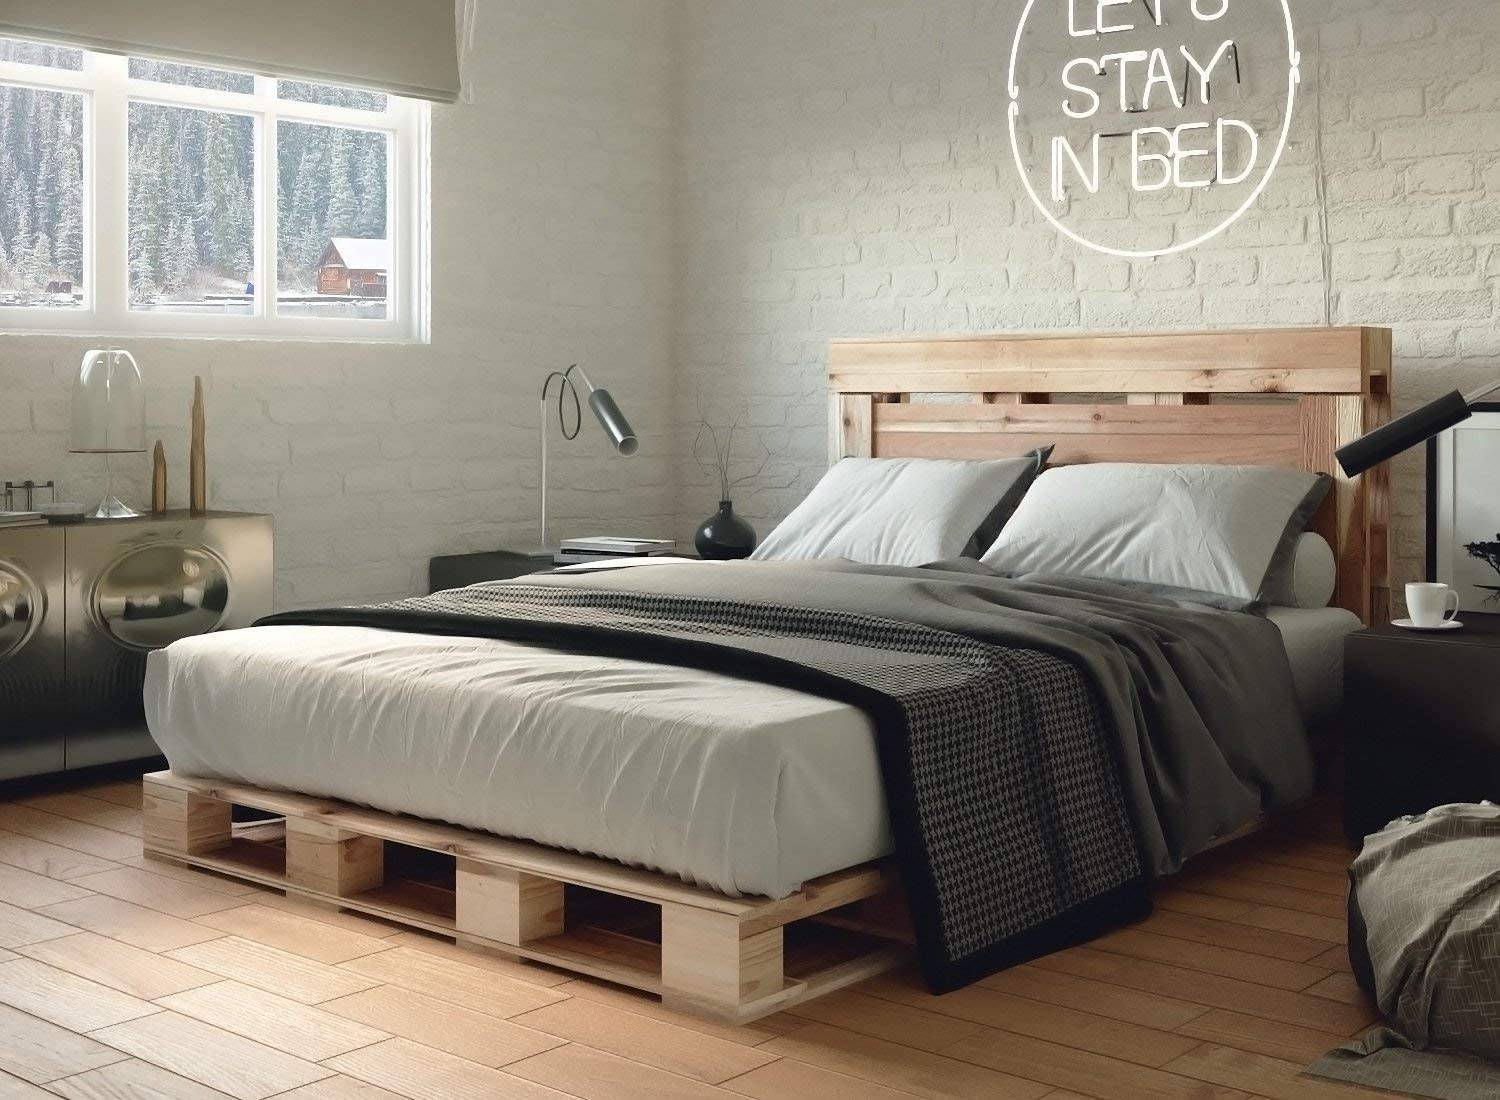 Những ý tưởng thú vị giúp phòng ngủ thêm ấn tượng với giường pallet tự chế - Ảnh 13.